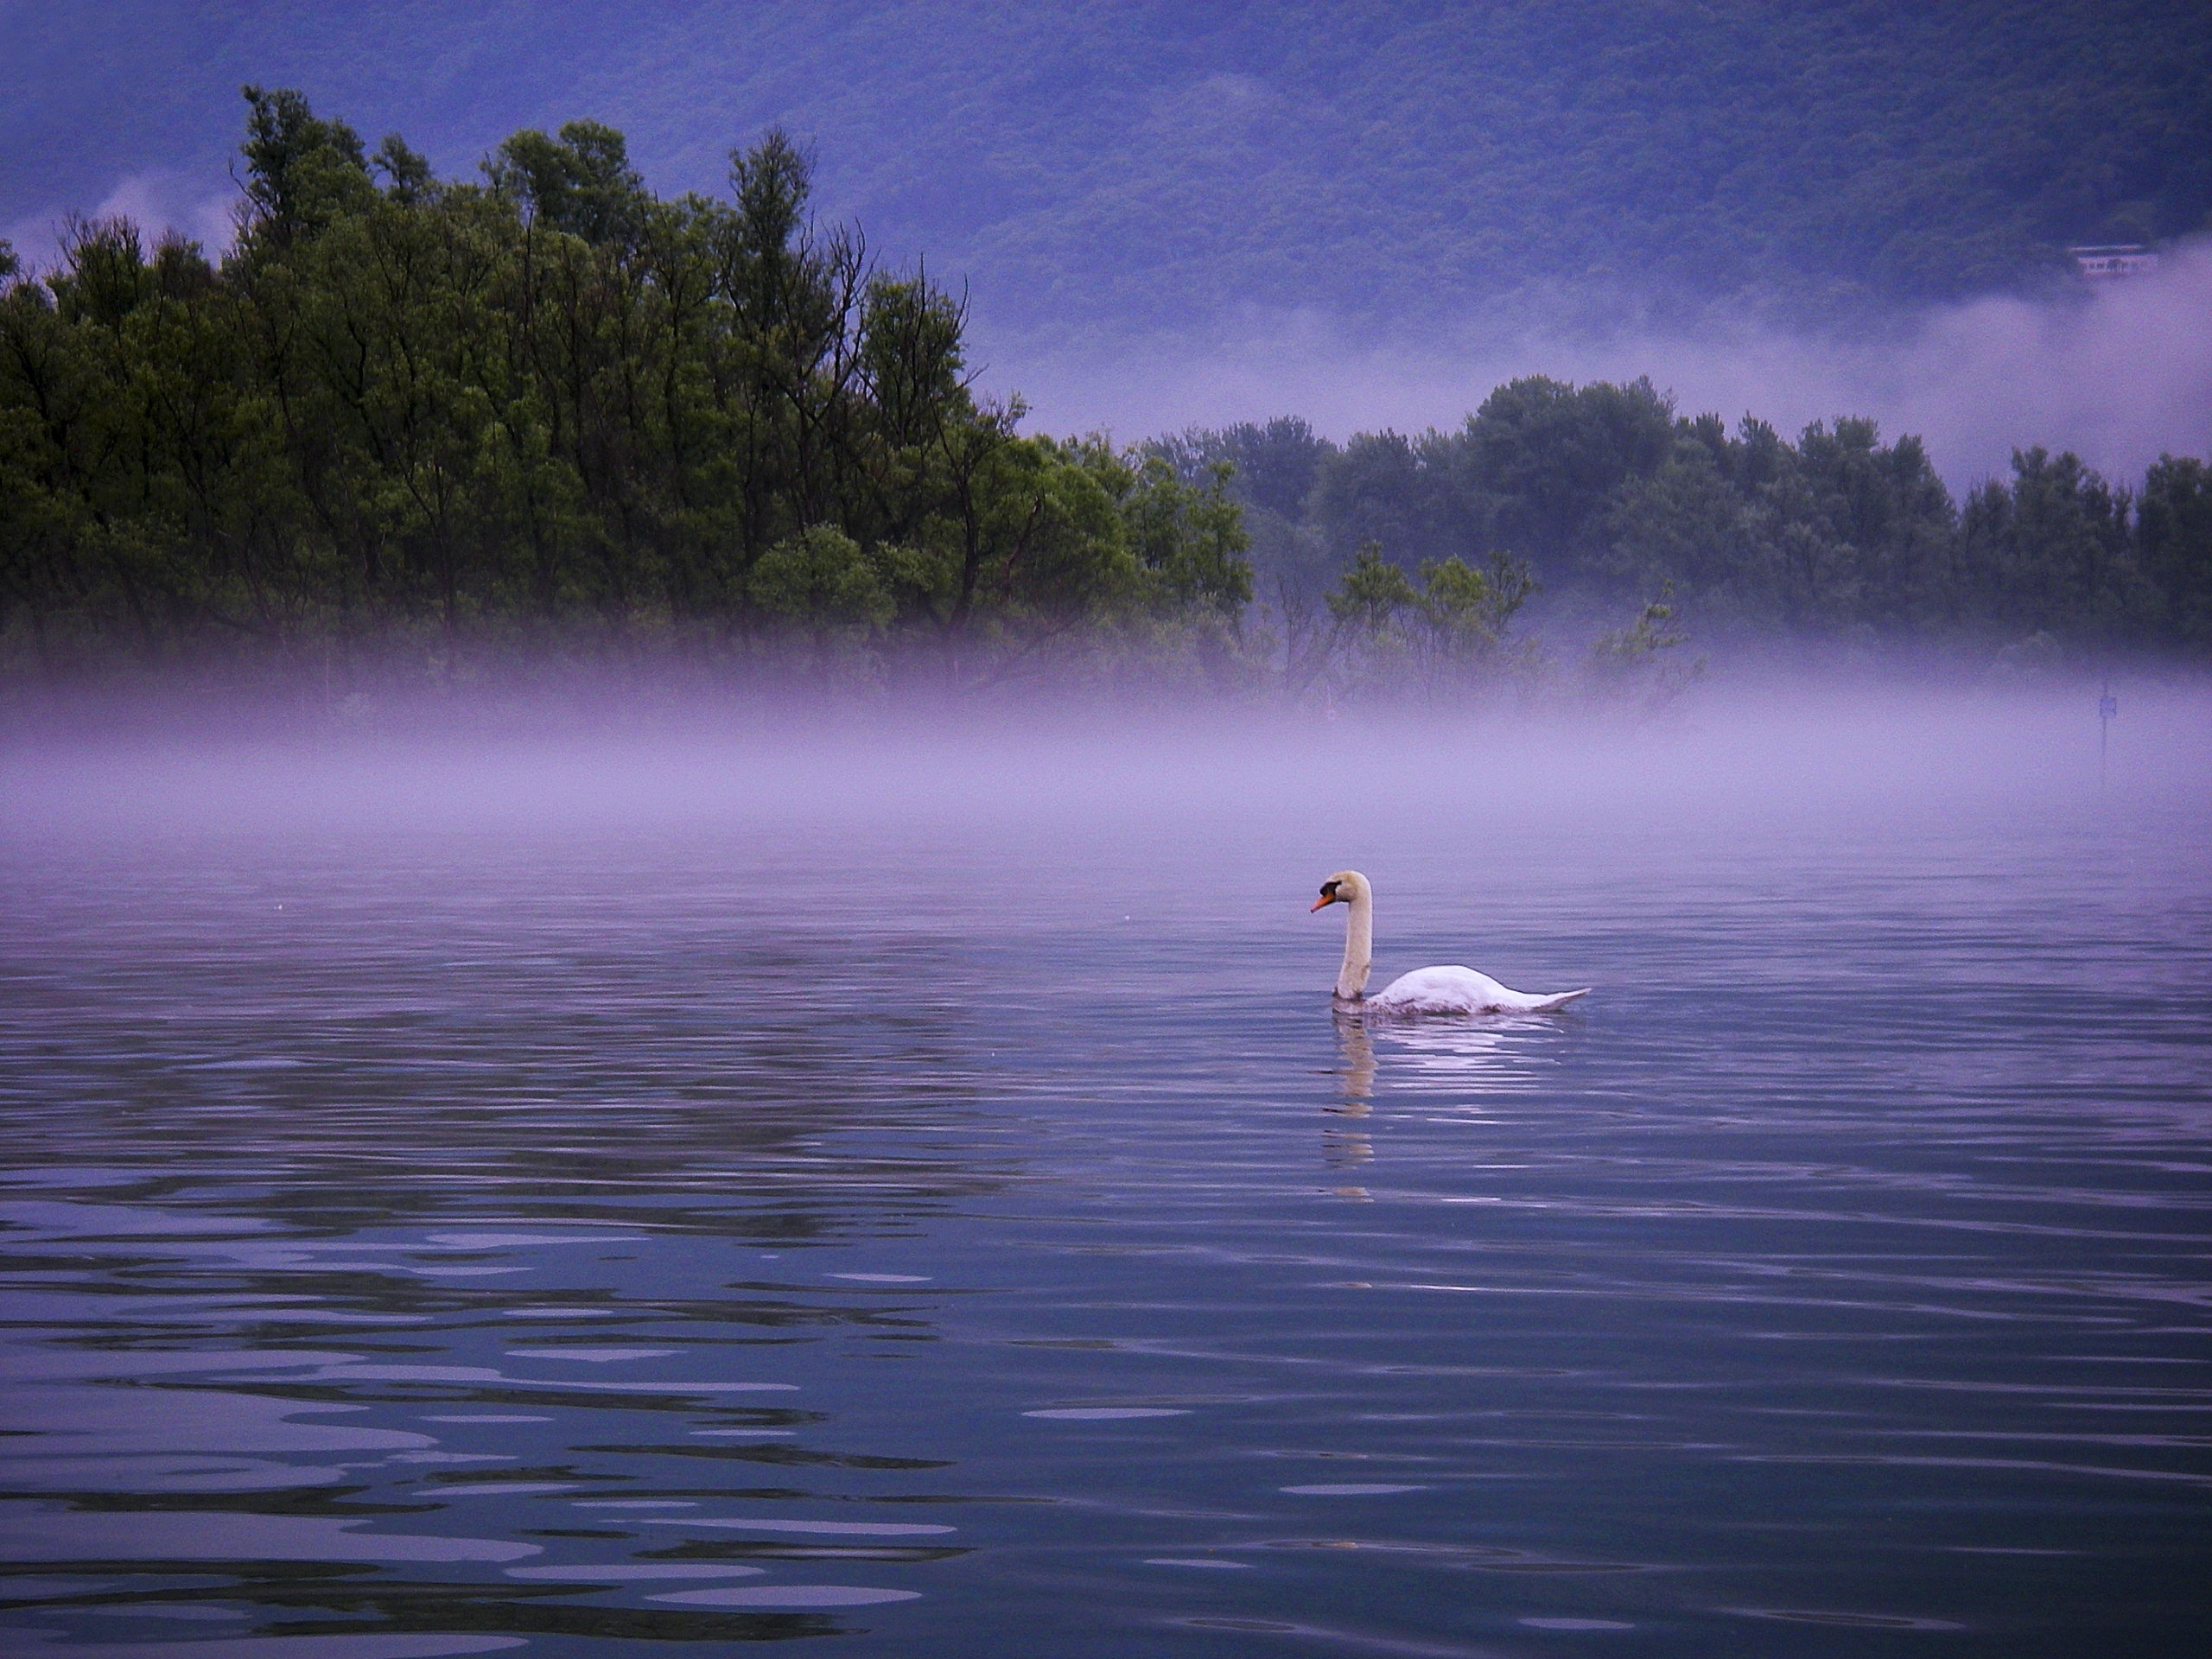 white swan swimming on the lake